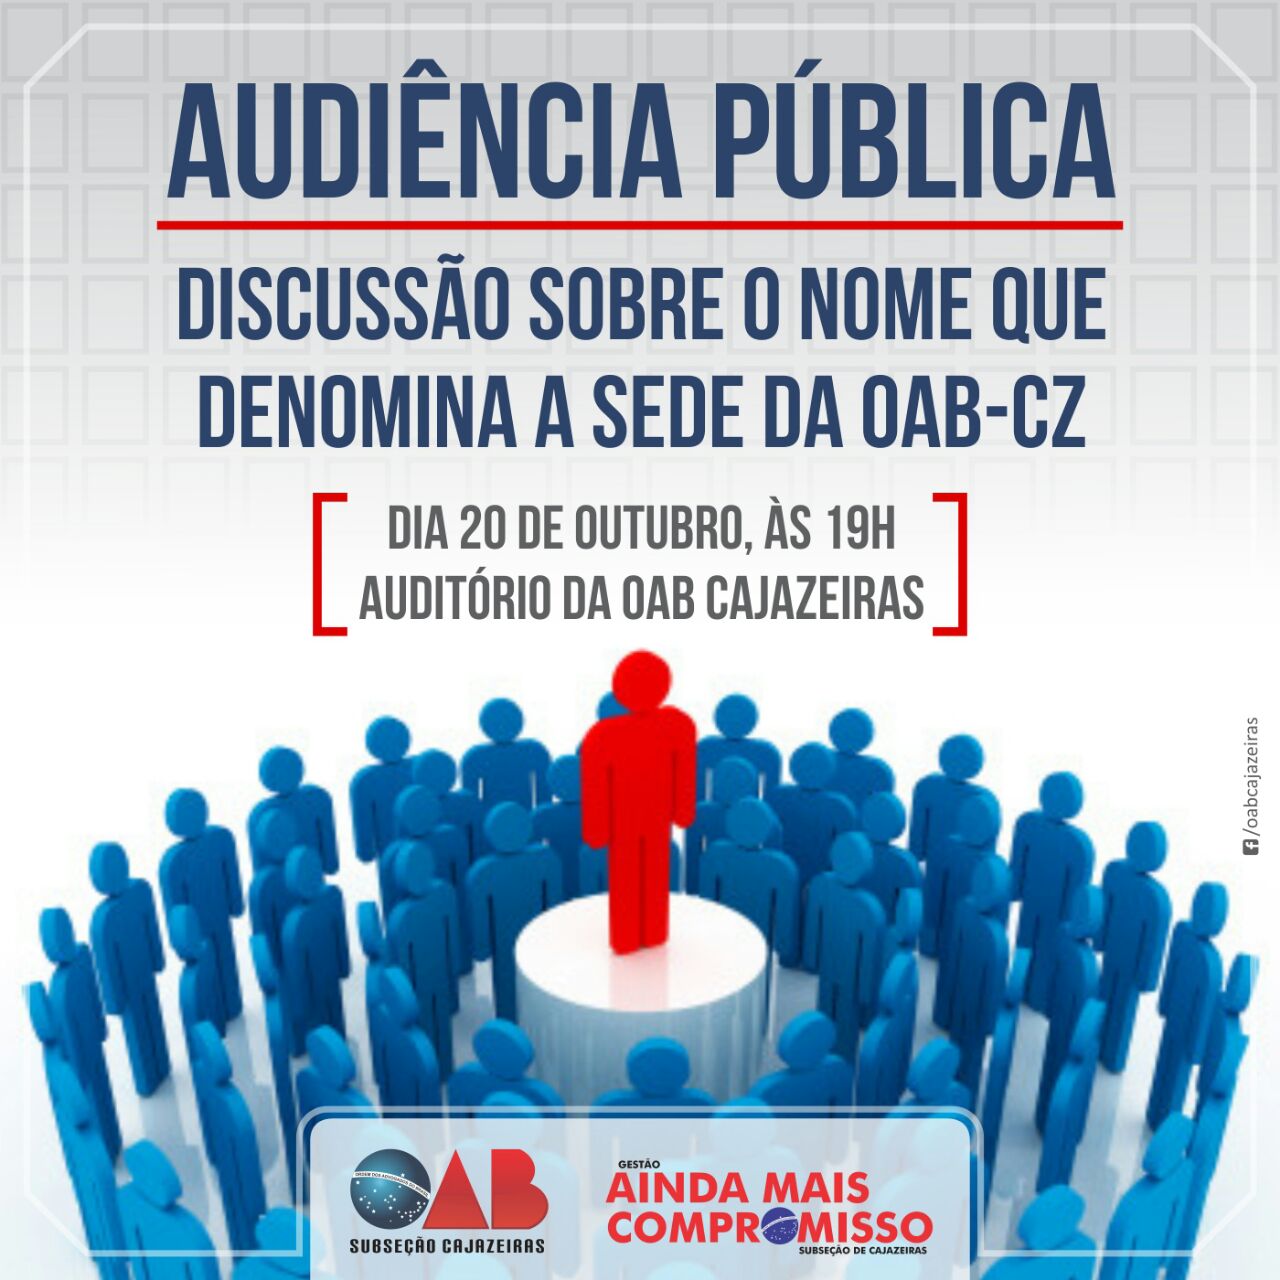 Nome da sede da OAB de Cajazeiras poderá ser mudada durante reunião nesta quinta-feira - Diário do Sertão (liberação de imprensa) (Blogue)